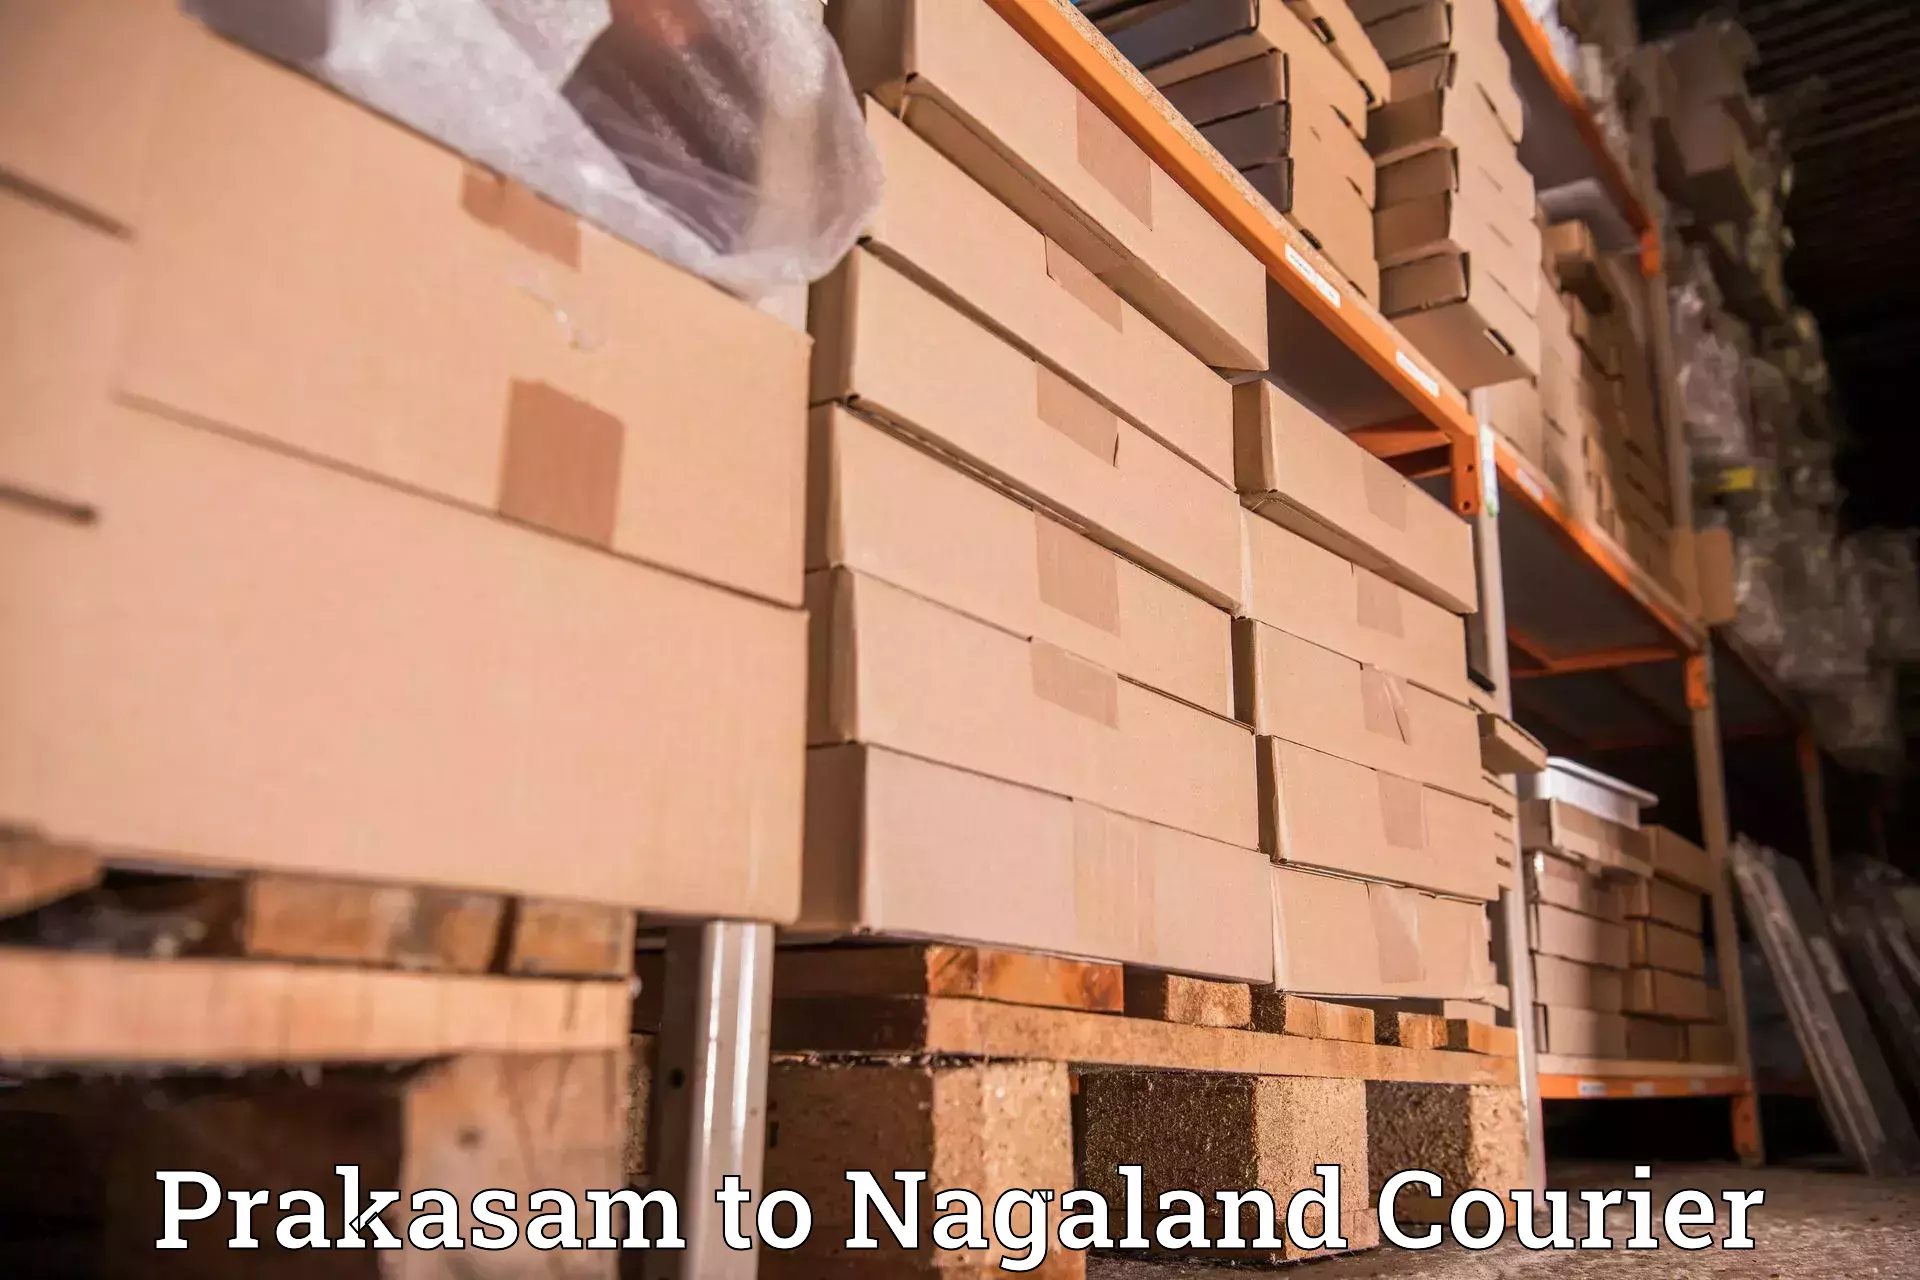 Urban courier service Prakasam to Dimapur